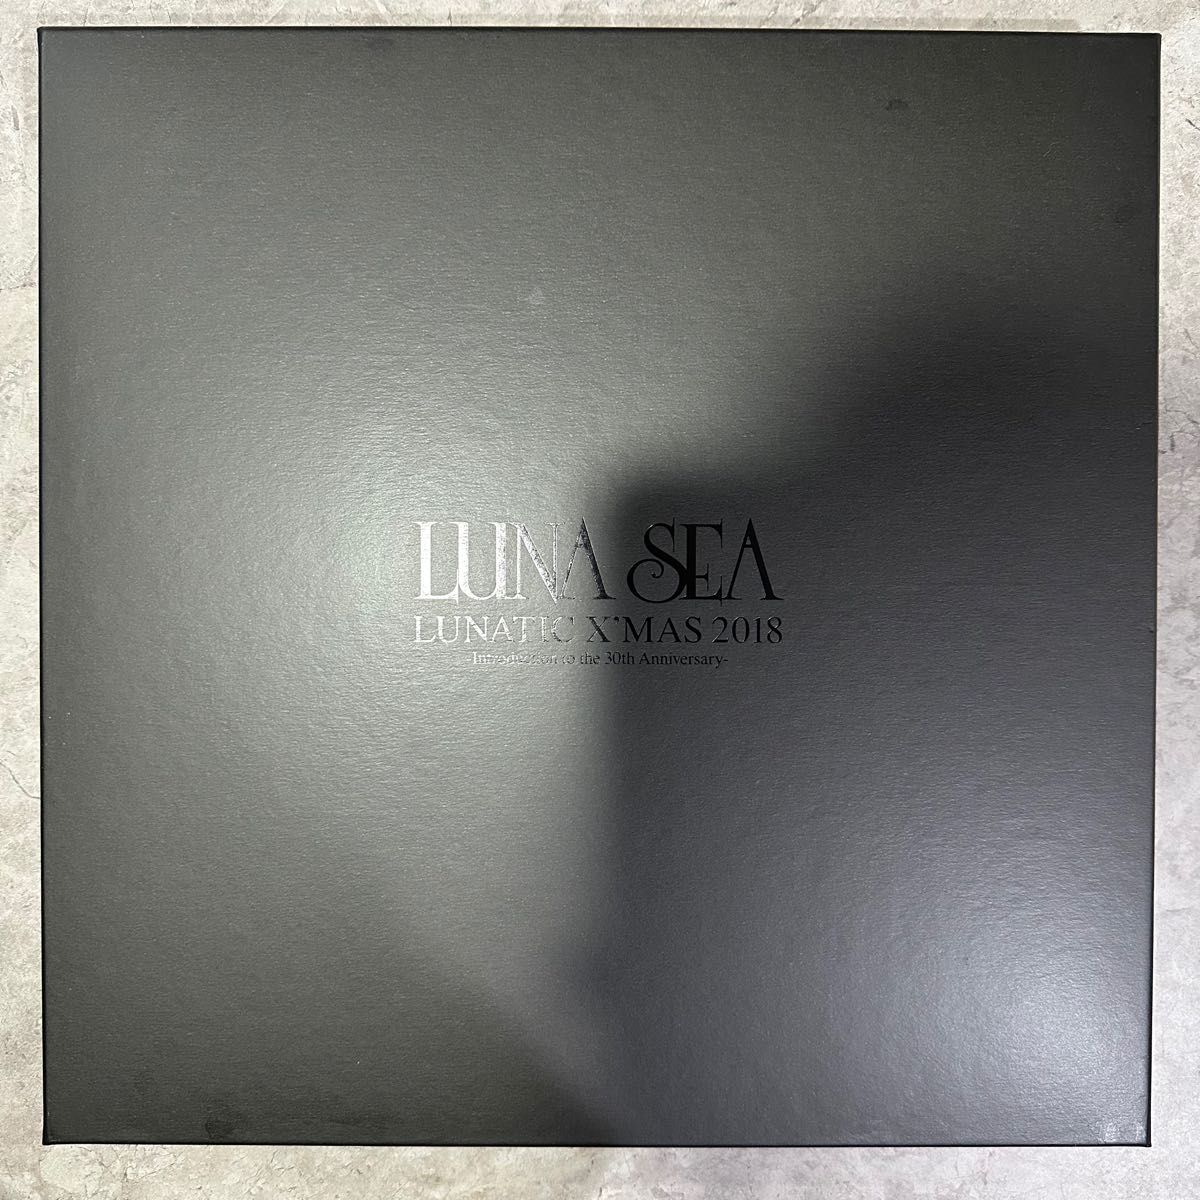 LUNA SEA ライブ LUNATIC X'MAS 2018 箱